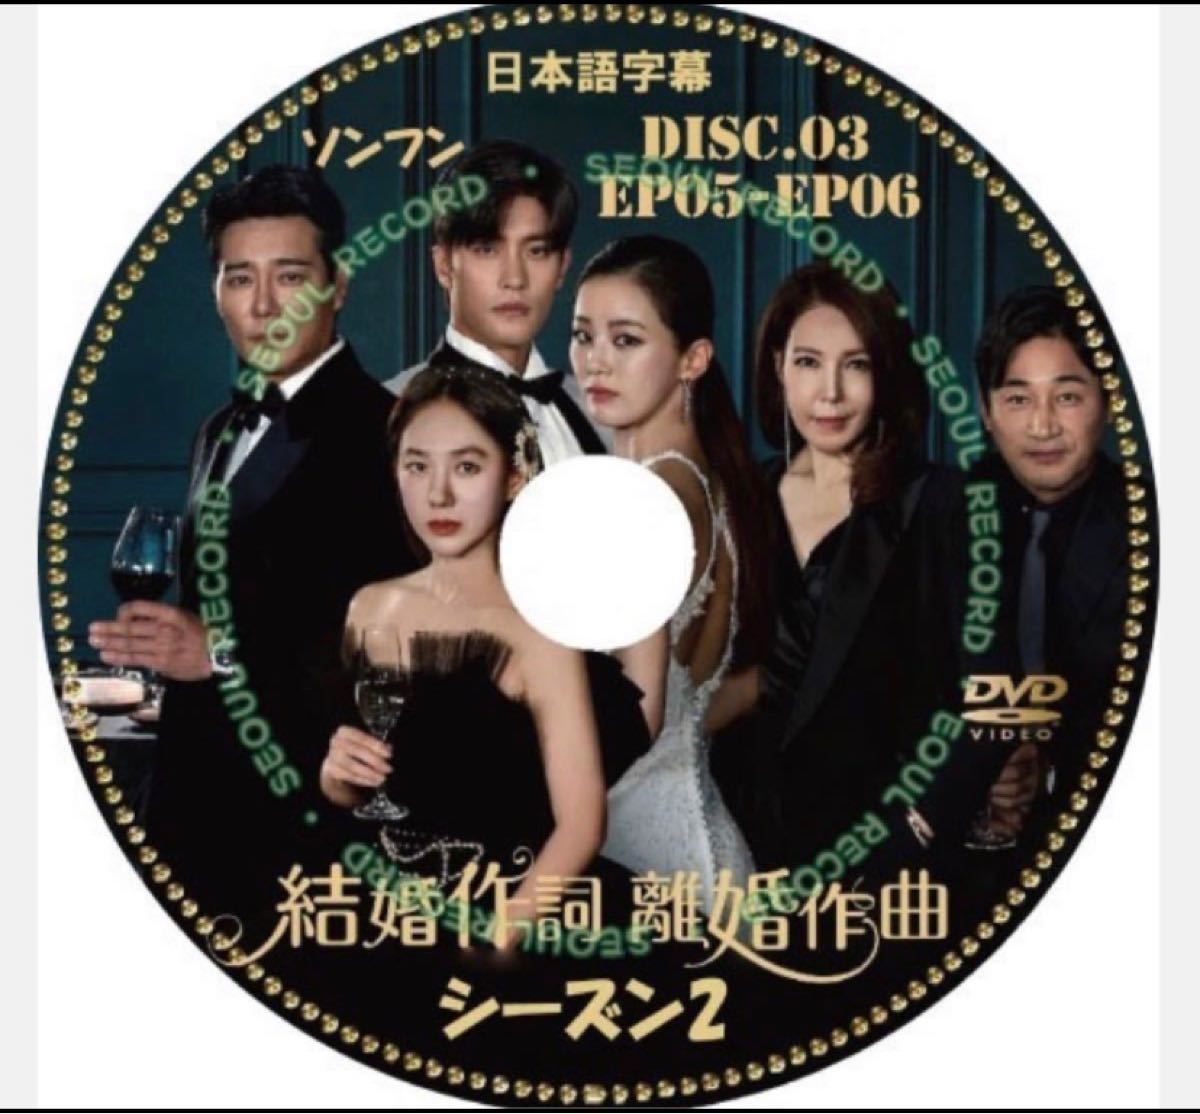 ソンフン [結婚作詞 離婚作曲 シーズン2] (日本語字幕)DISC.3  EP5＋6 DVDレーベル印刷付